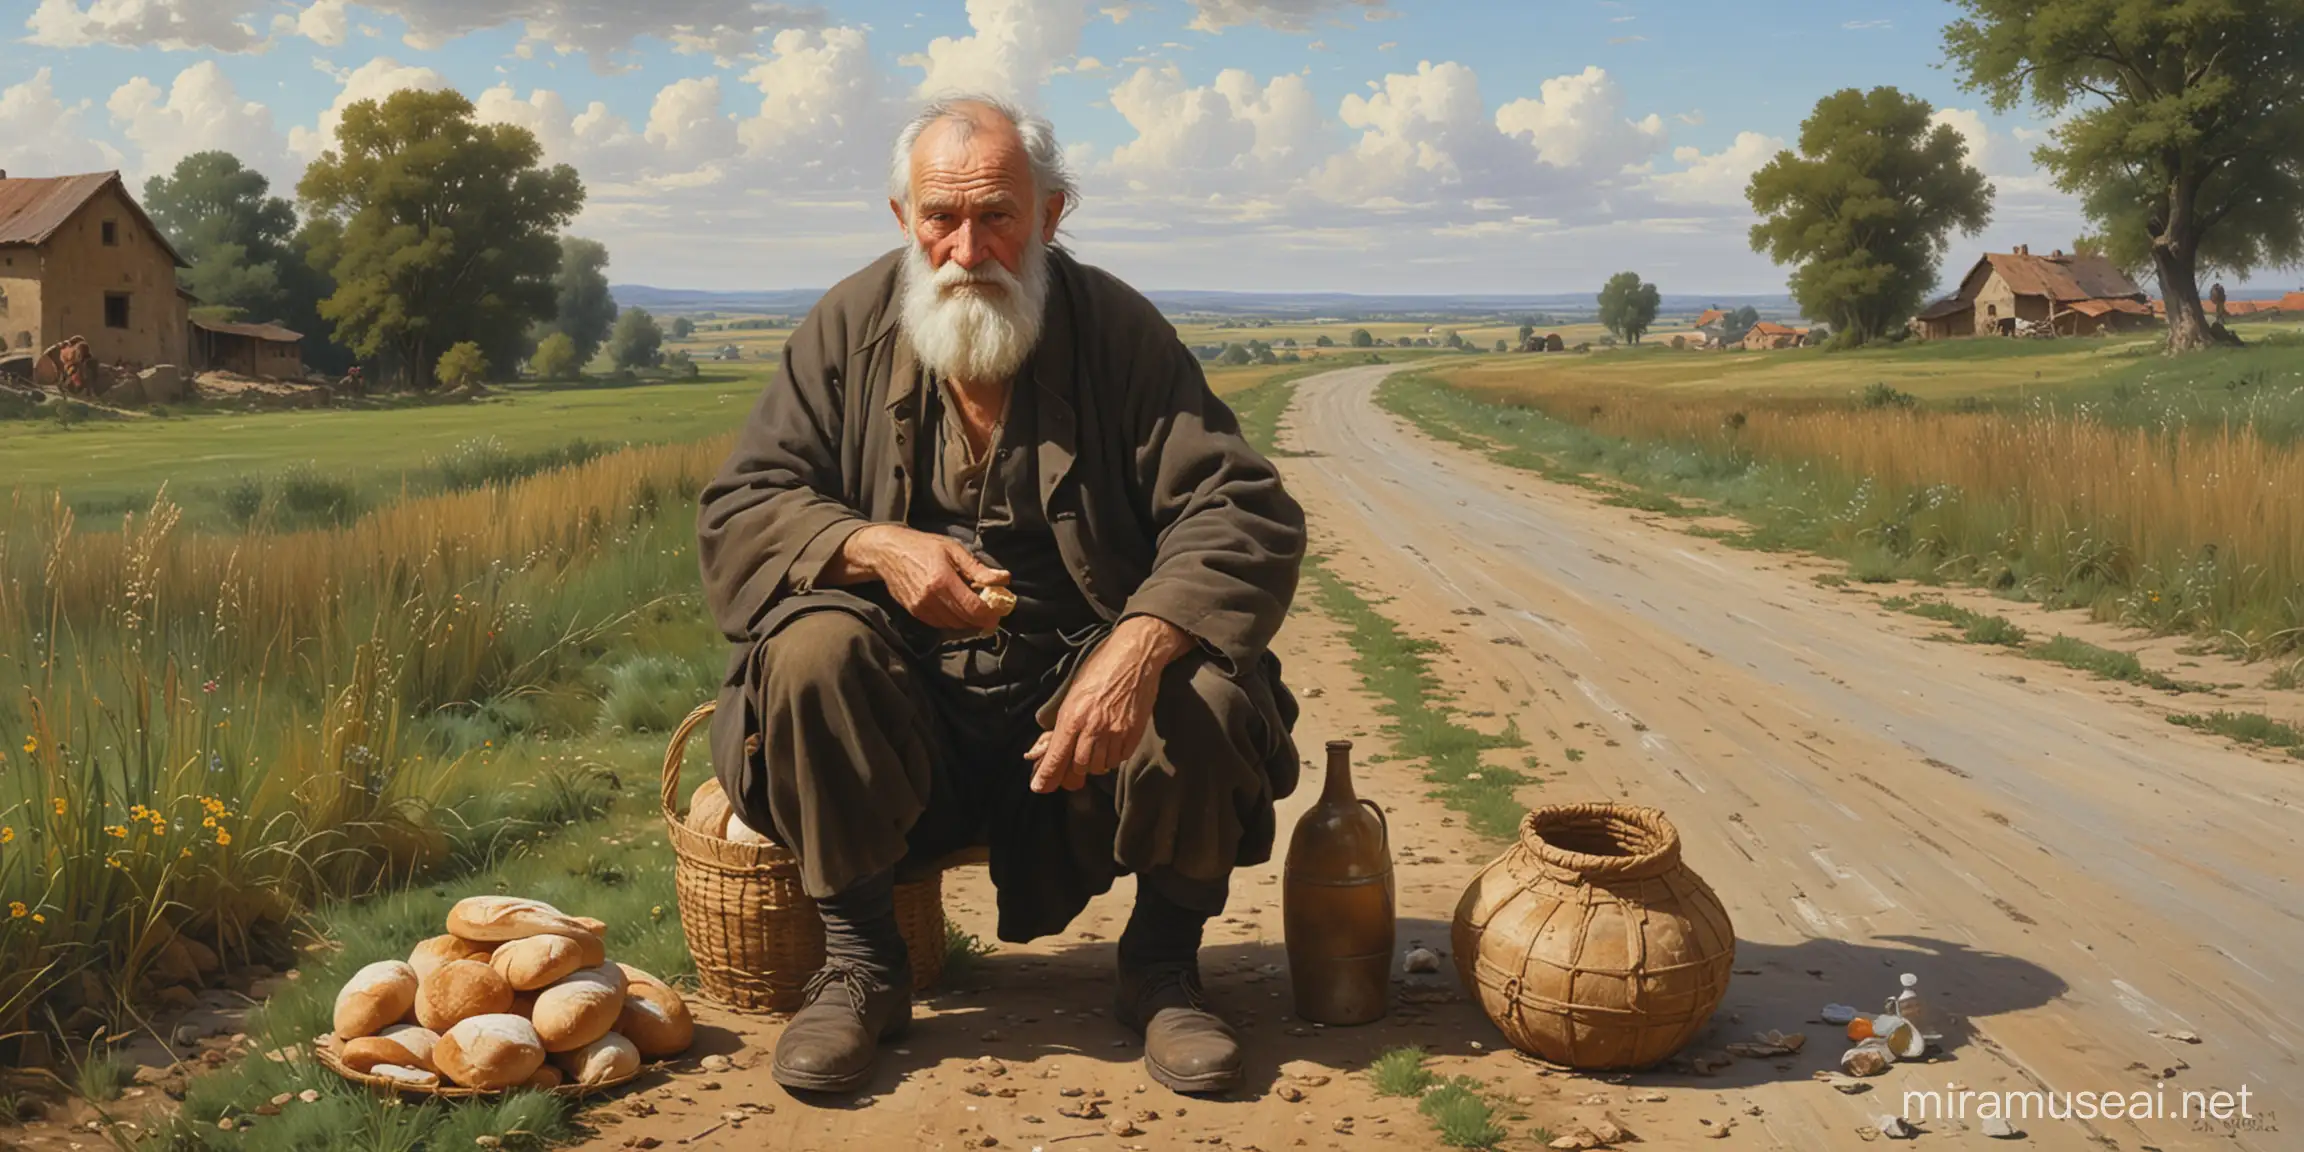 картина в стилегенриха семирадского, эпическая старик внук , у дороге в поле, сидят, устали,в руках хлеб и кружка с водой, дали